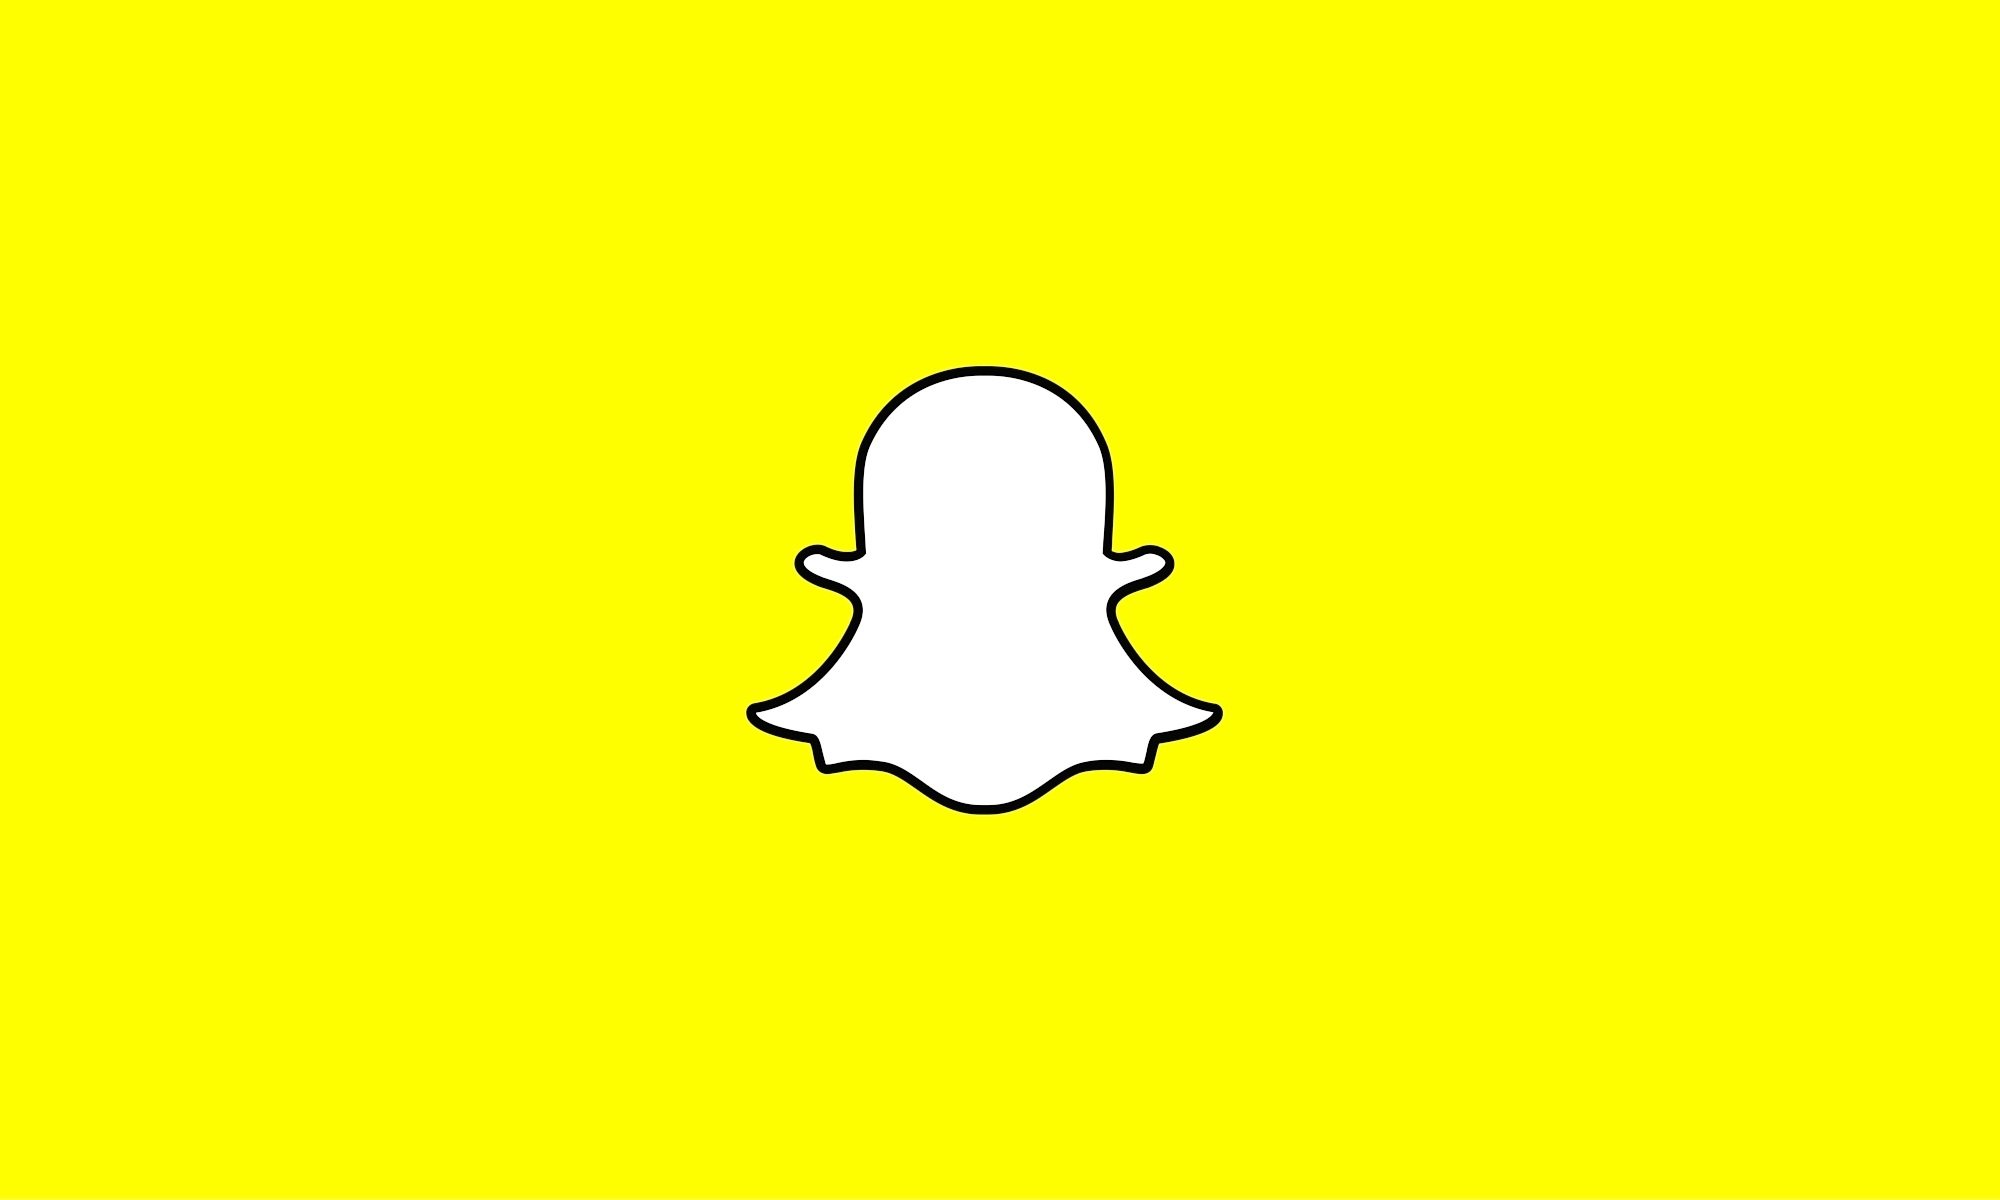 A készüléken tárolt fényképek vagy videók feltöltése a Snapchatbe